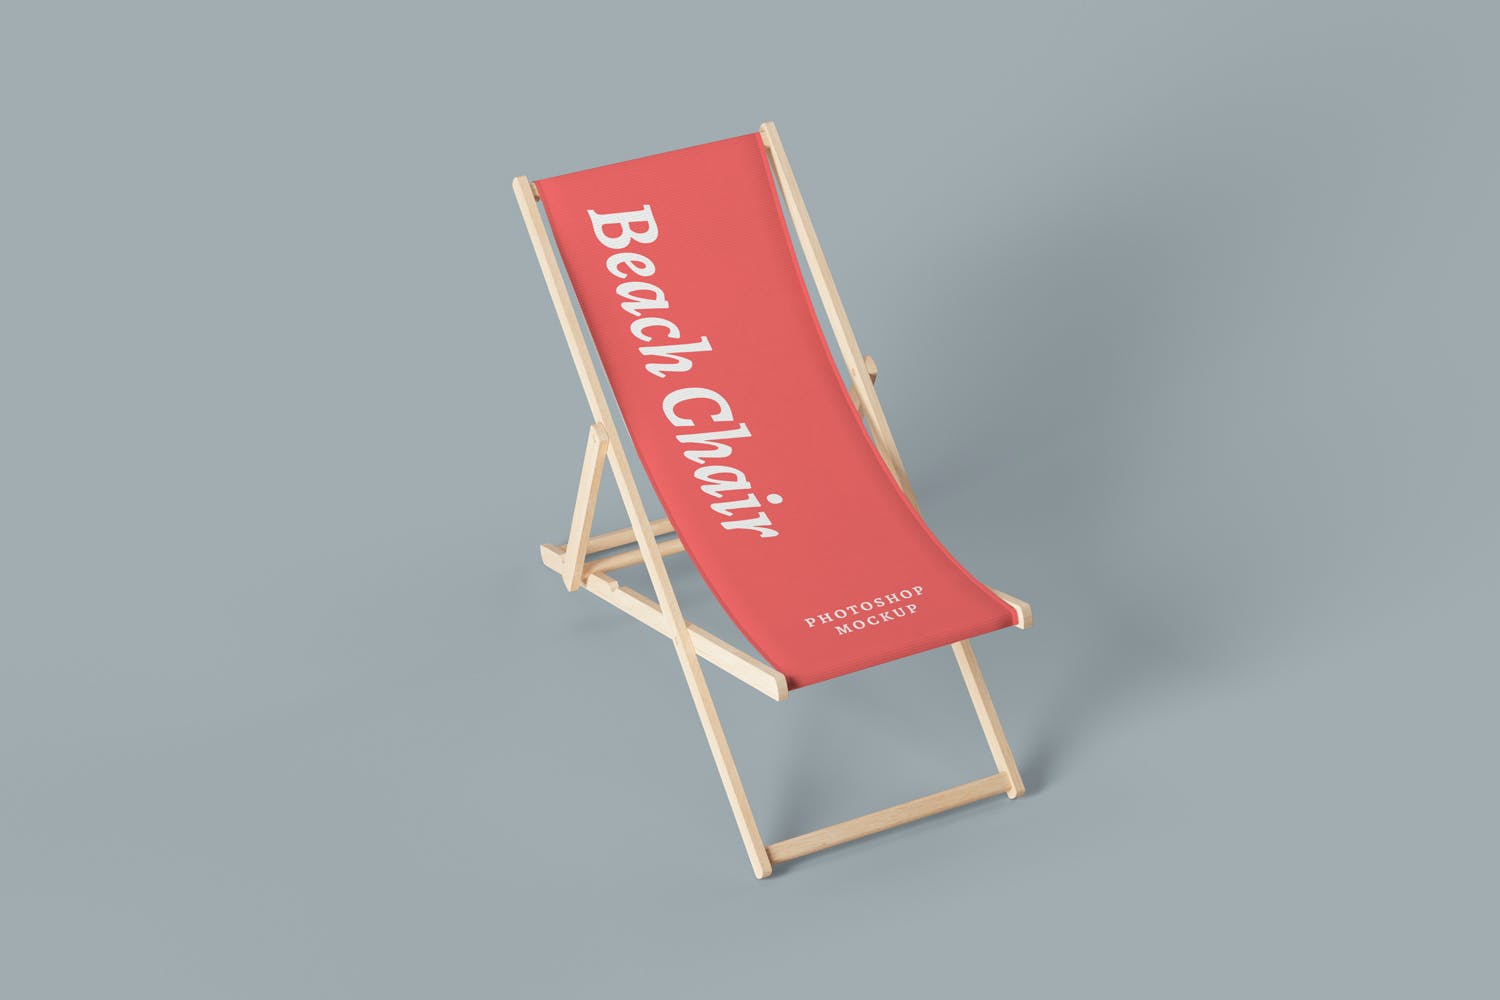 沙滩椅Logo&广告设计样机 Beach Chair Mockups设计素材模板